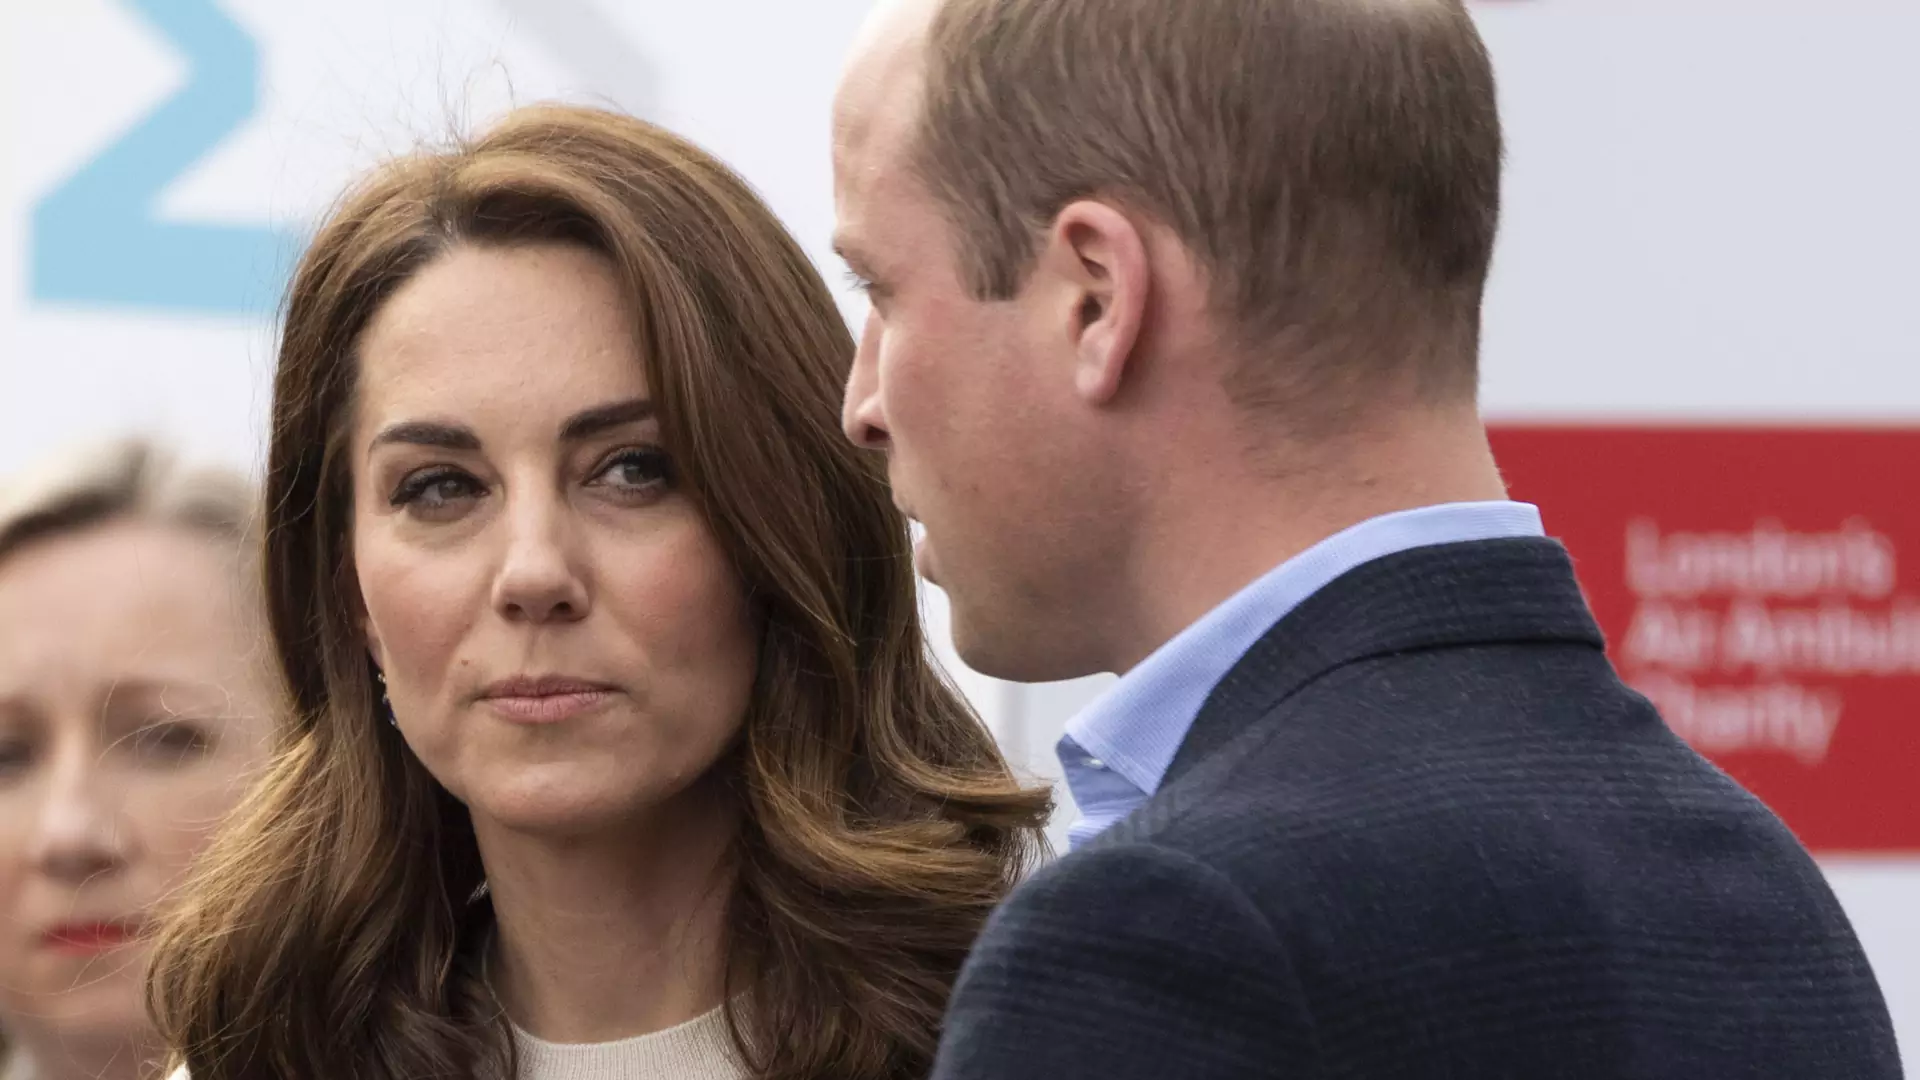 Księżna Kate wyprowadziła się z Pałacu? Kryzys jest poważniejszy niż myśleliśmy?